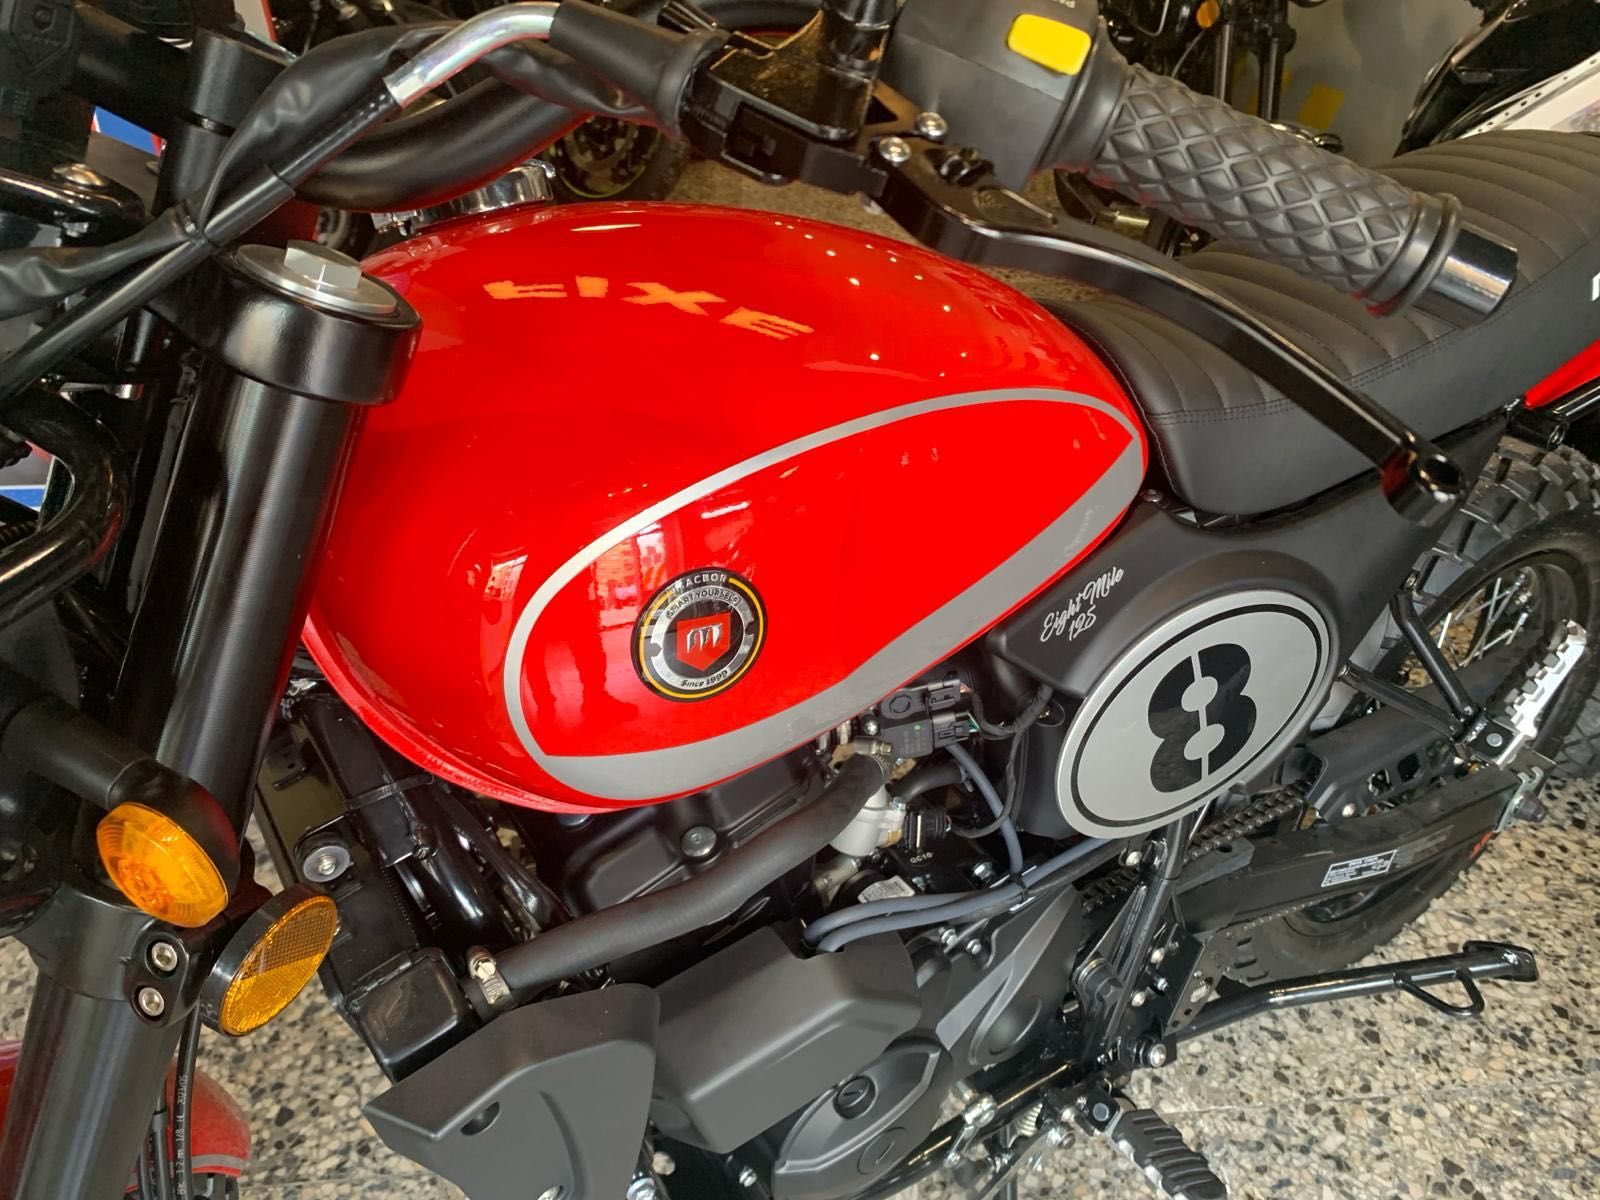 Macbor Eight Mile Uma 125 cc de extraordinario desempenho (Nova-0 Kms)